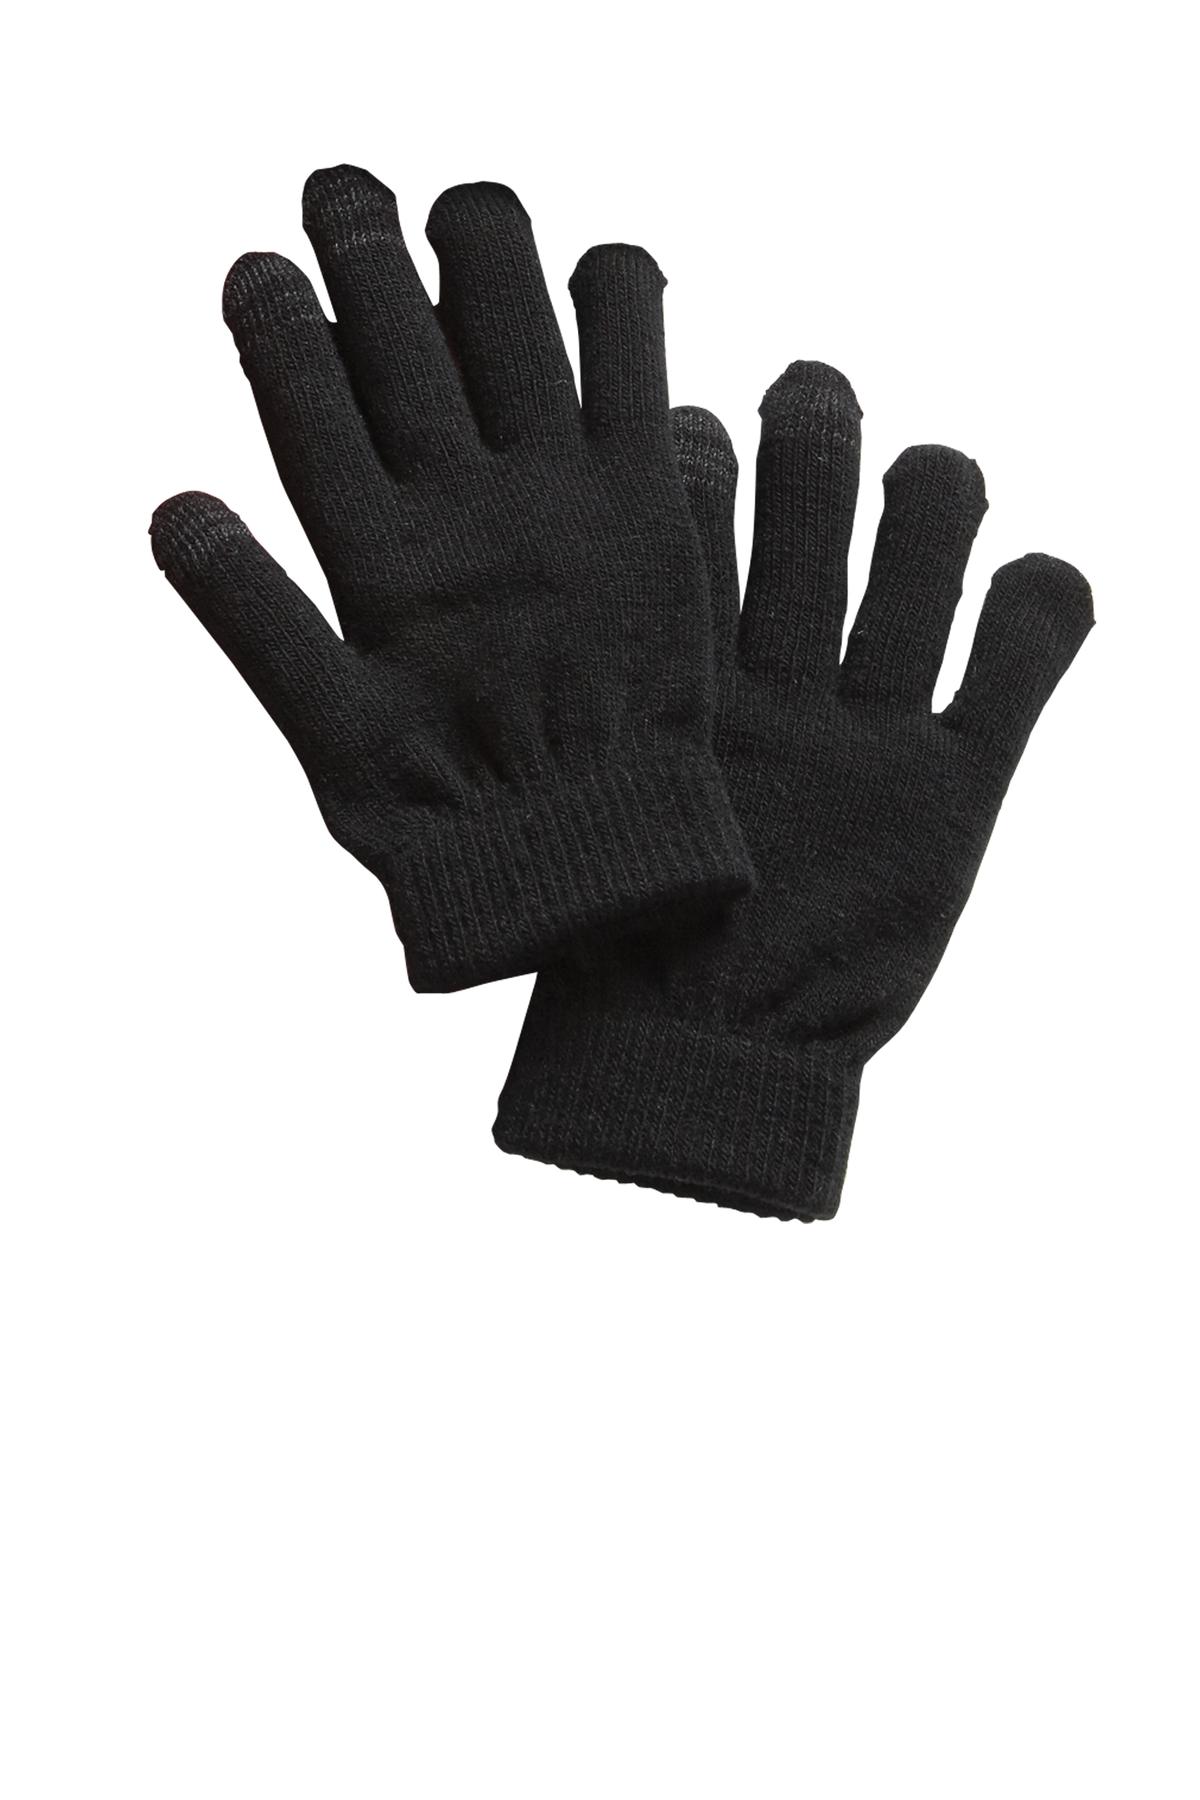 Sport-Tek Hospitality Accessories & Caps ® Spectator Gloves.-Sport-Tek